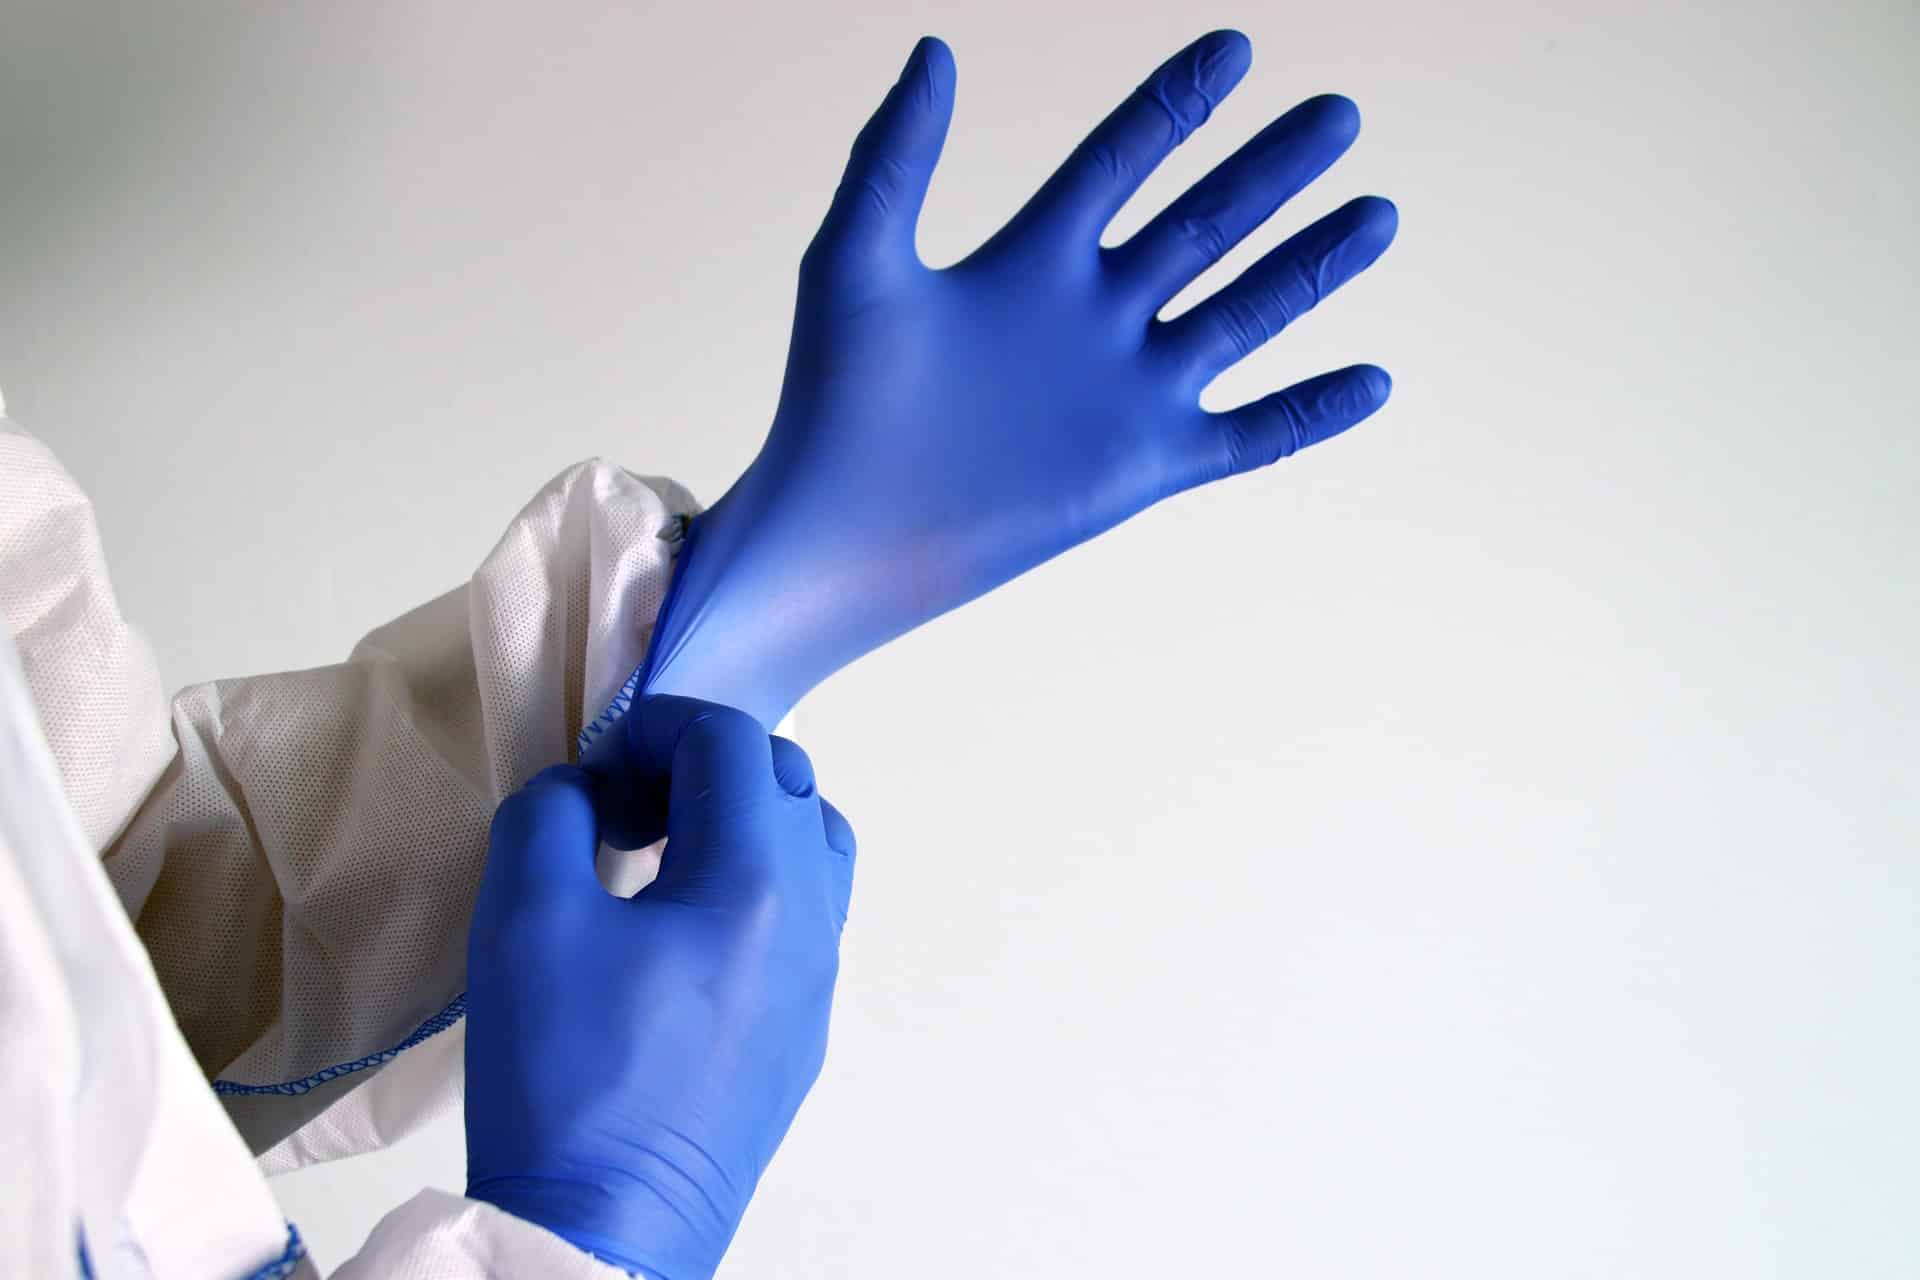 medical gloves